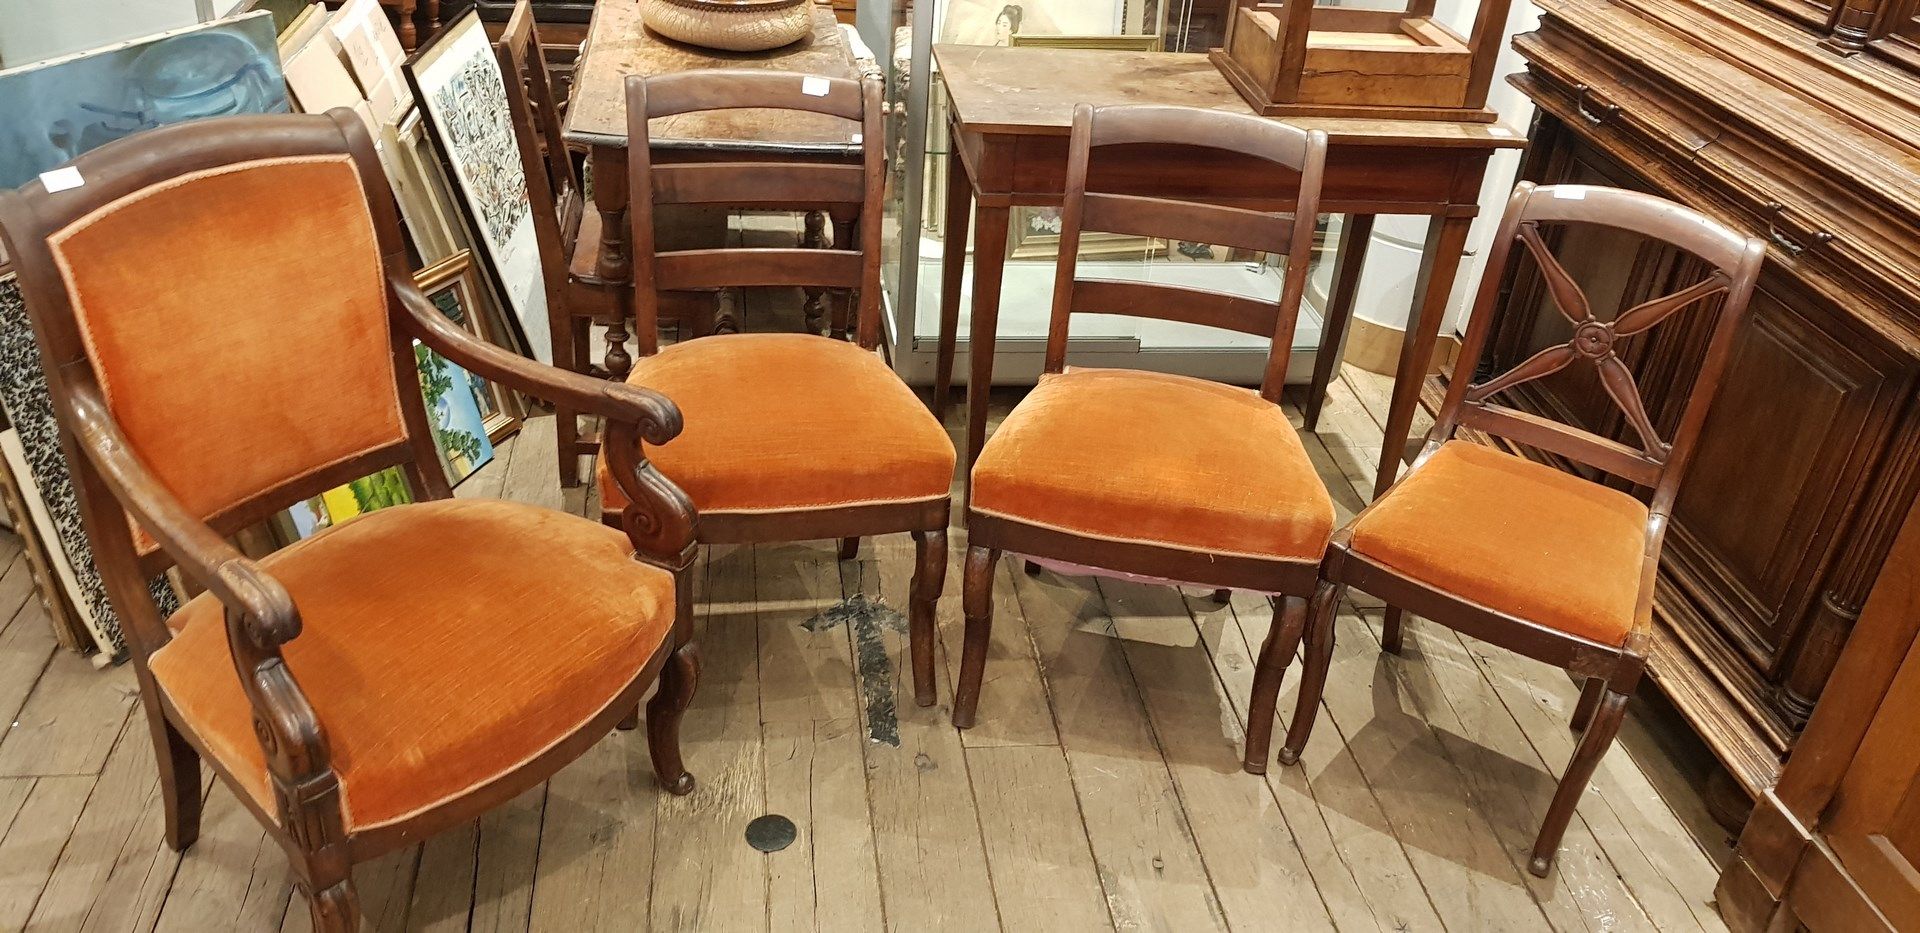 Null 由一把扶手椅、两把椅子和一把小椅子组成的套房，用橙色天鹅绒装饰。

复原风格

扶手椅的尺寸：91 x 45 x 48厘米

椅子的尺寸：86 x 4&hellip;